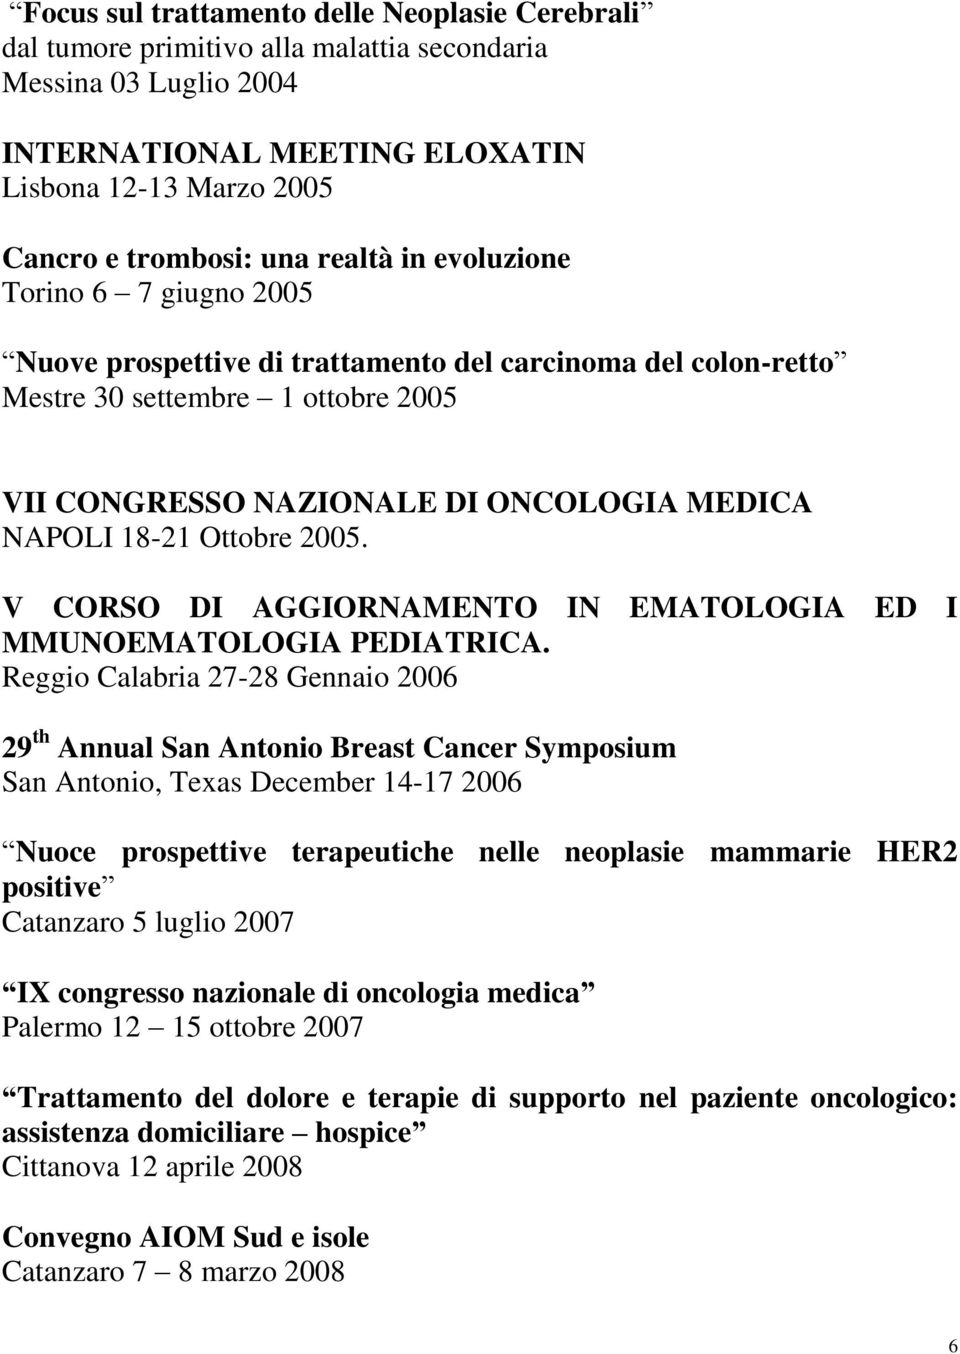 Ottobre 2005. V CORSO DI AGGIORNAMENTO IN EMATOLOGIA ED I MMUNOEMATOLOGIA PEDIATRICA.